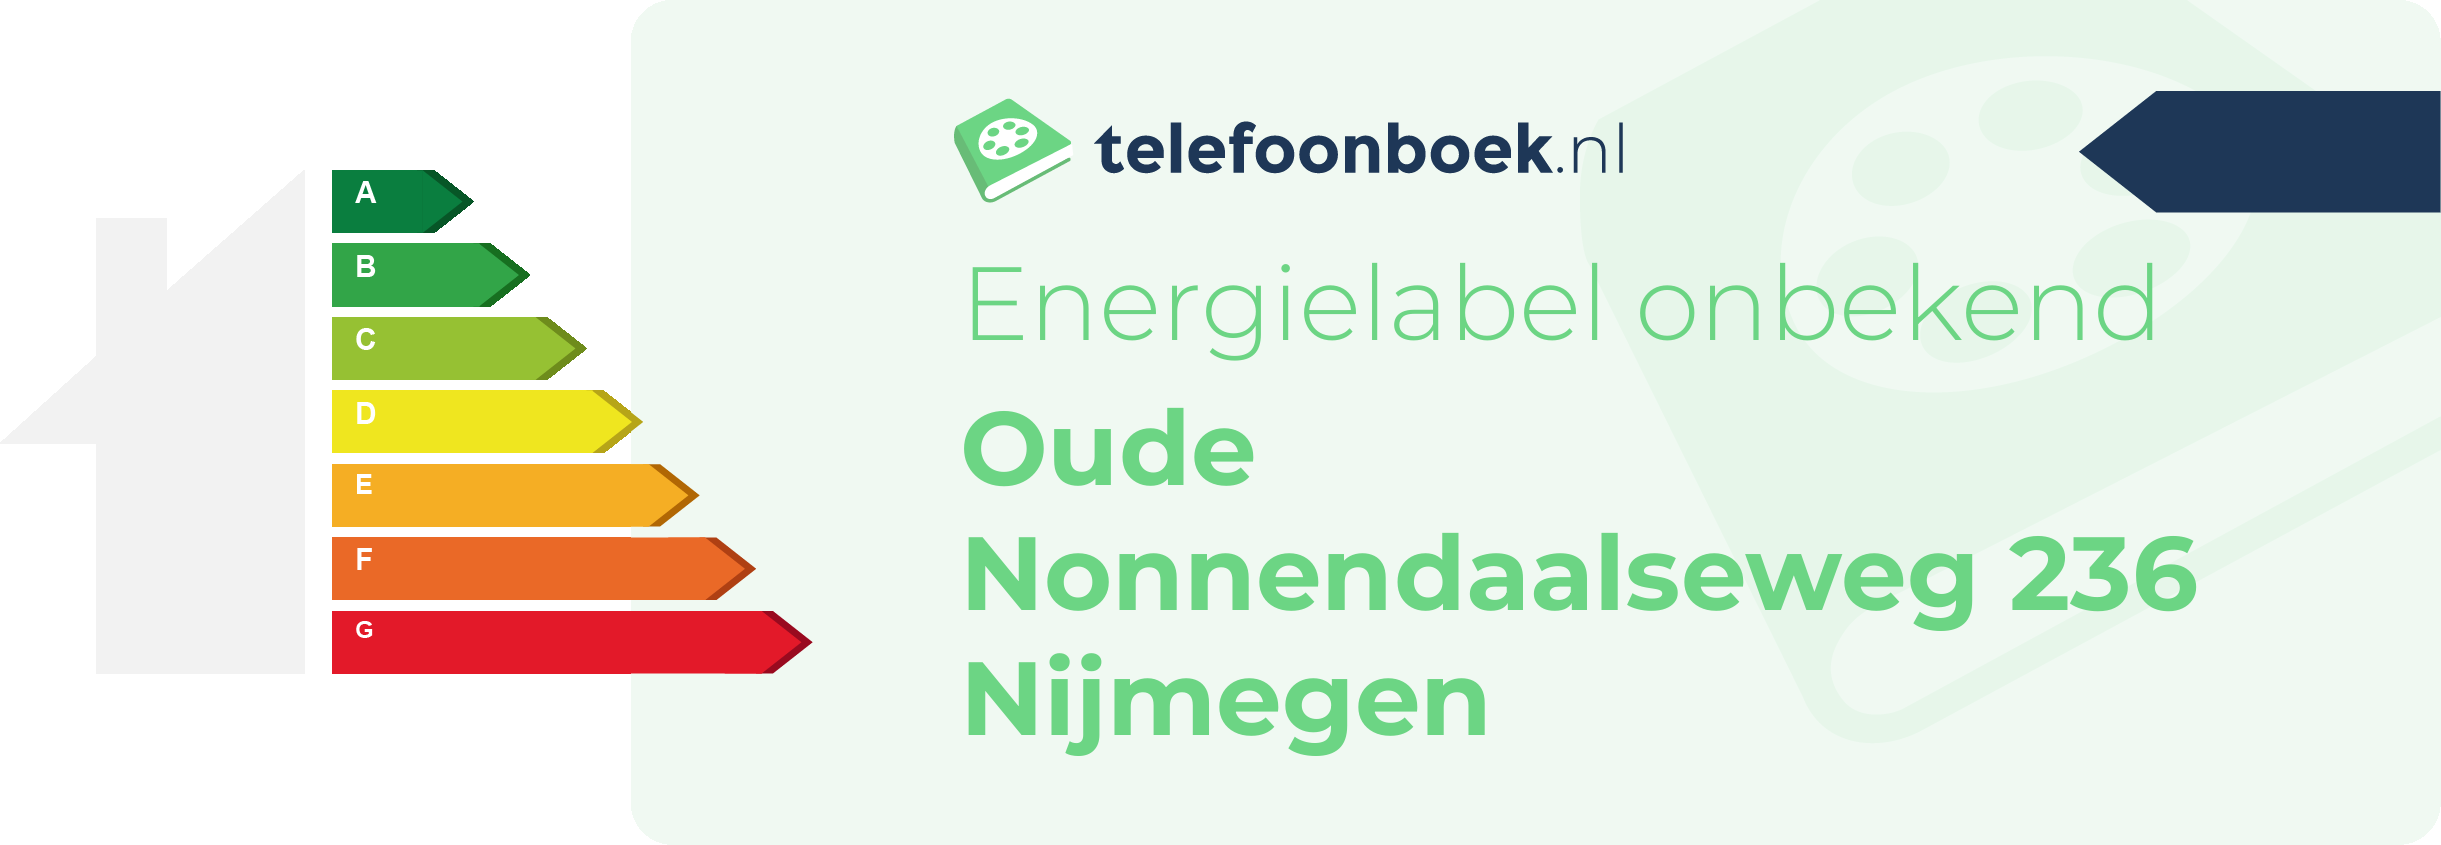 Energielabel Oude Nonnendaalseweg 236 Nijmegen